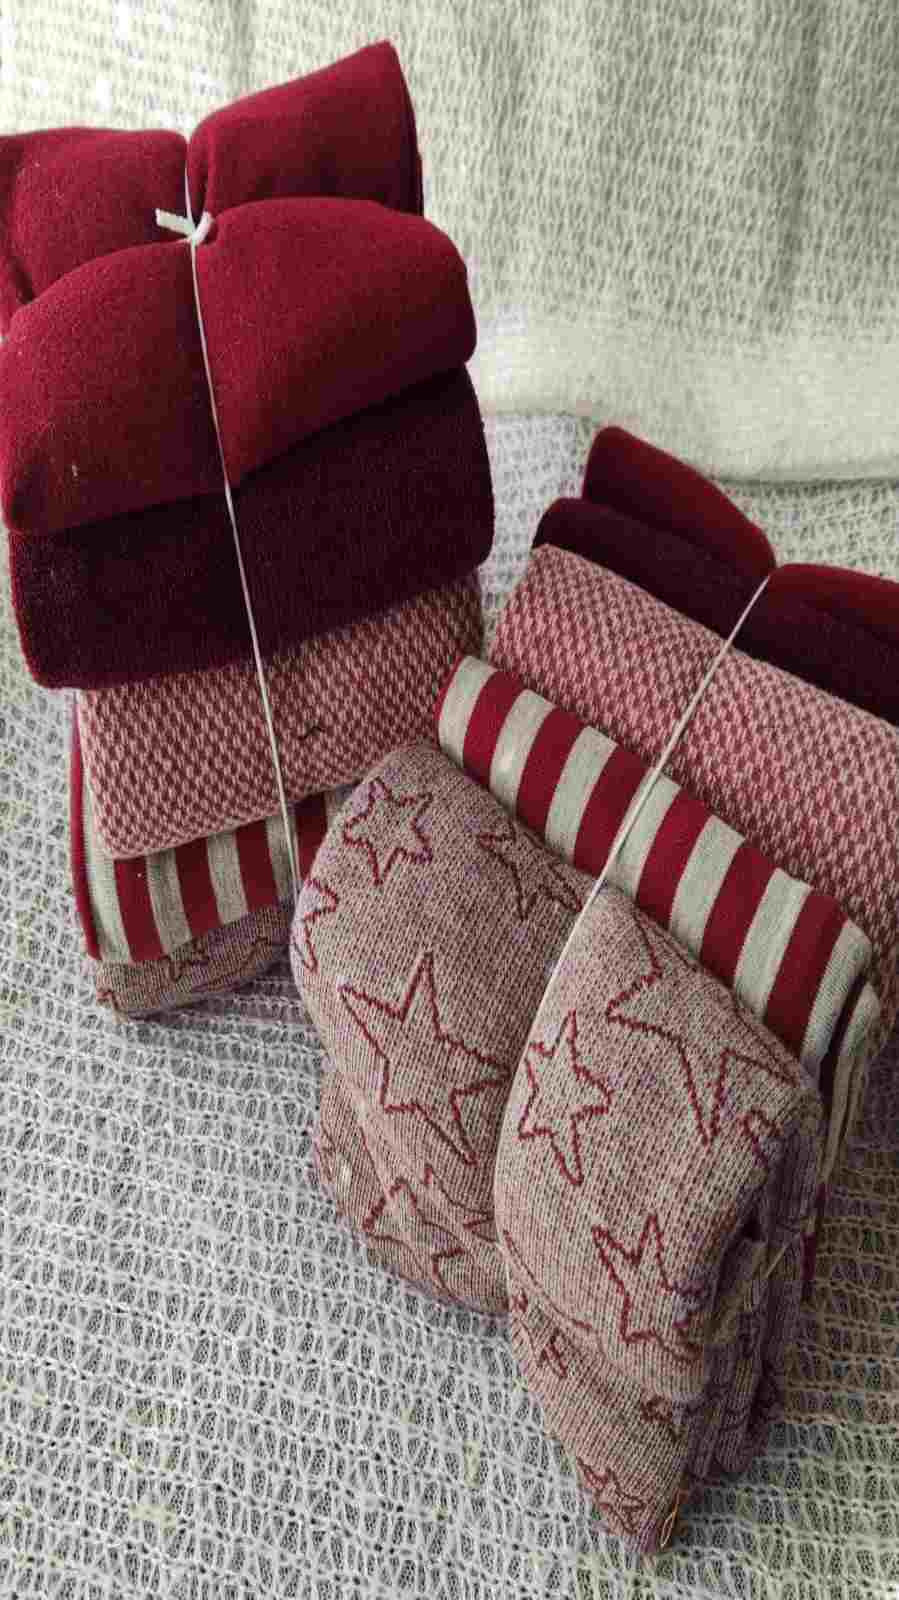 Pacchettone "Caldo Natale" è un vero e proprio  pacco composto da 5 tessuti lanati o felpati, di dimensione 50 x70 cm circa, abbinati per colore.